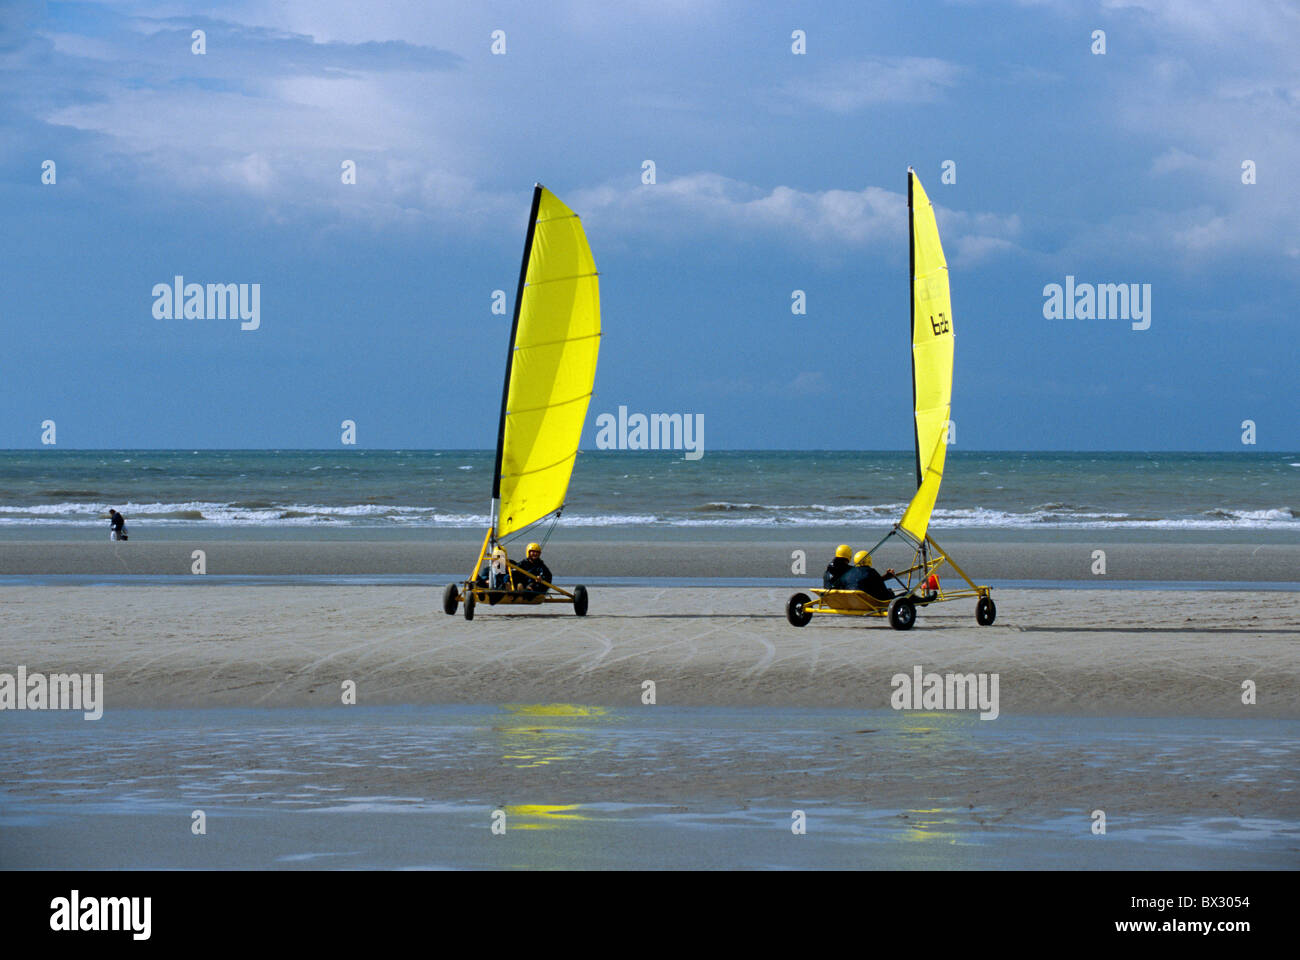 sand-yachting in De Panne, Flanders, Belgium Stock Photo